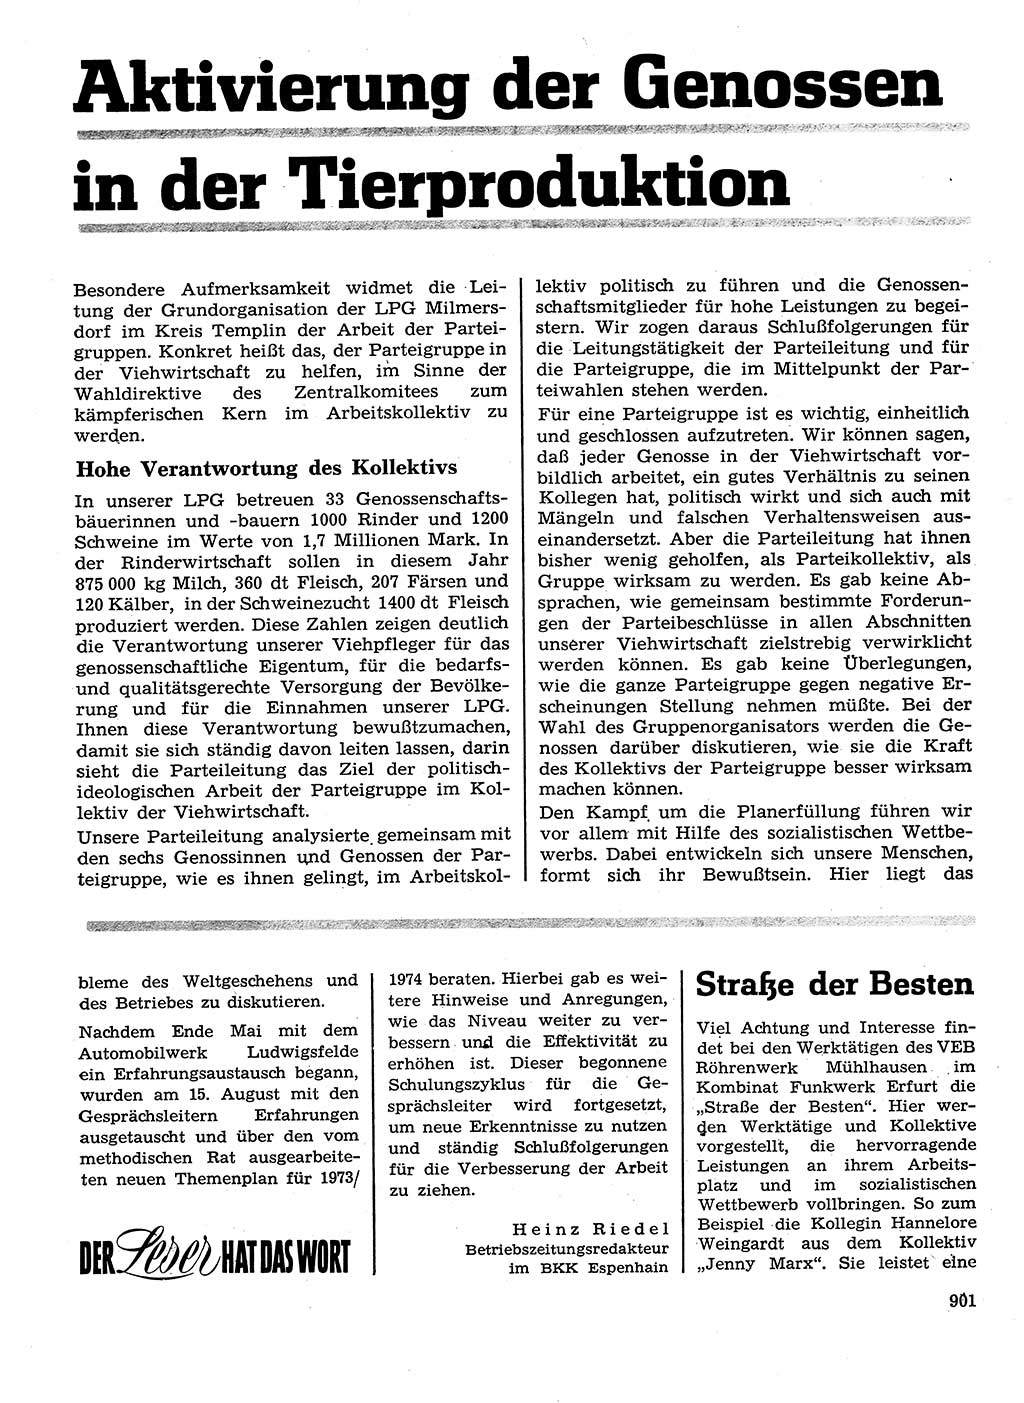 Neuer Weg (NW), Organ des Zentralkomitees (ZK) der SED (Sozialistische Einheitspartei Deutschlands) für Fragen des Parteilebens, 28. Jahrgang [Deutsche Demokratische Republik (DDR)] 1973, Seite 901 (NW ZK SED DDR 1973, S. 901)